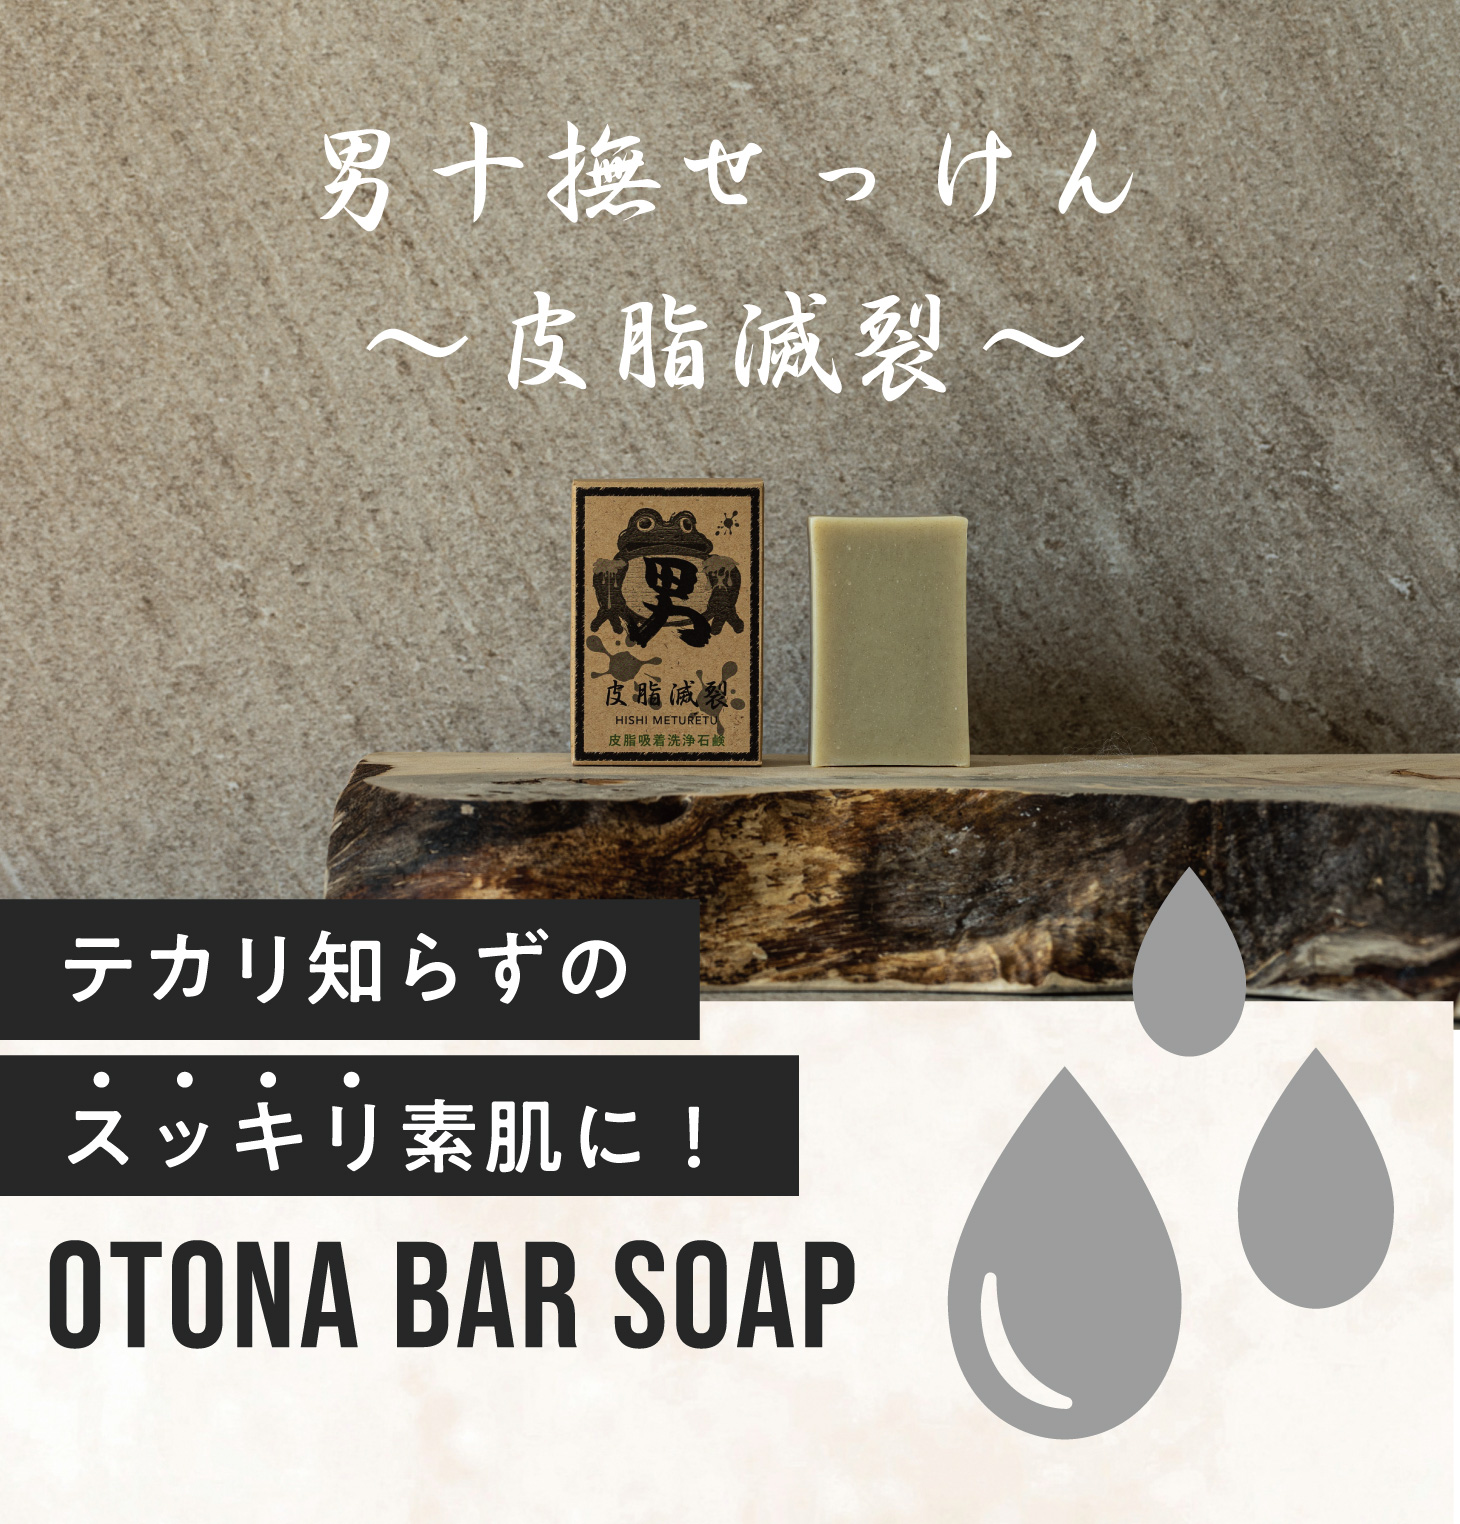 男十撫せっけん 〜皮脂滅裂〜 テカリ知らずのスッキリ素肌に OTONA bar soap